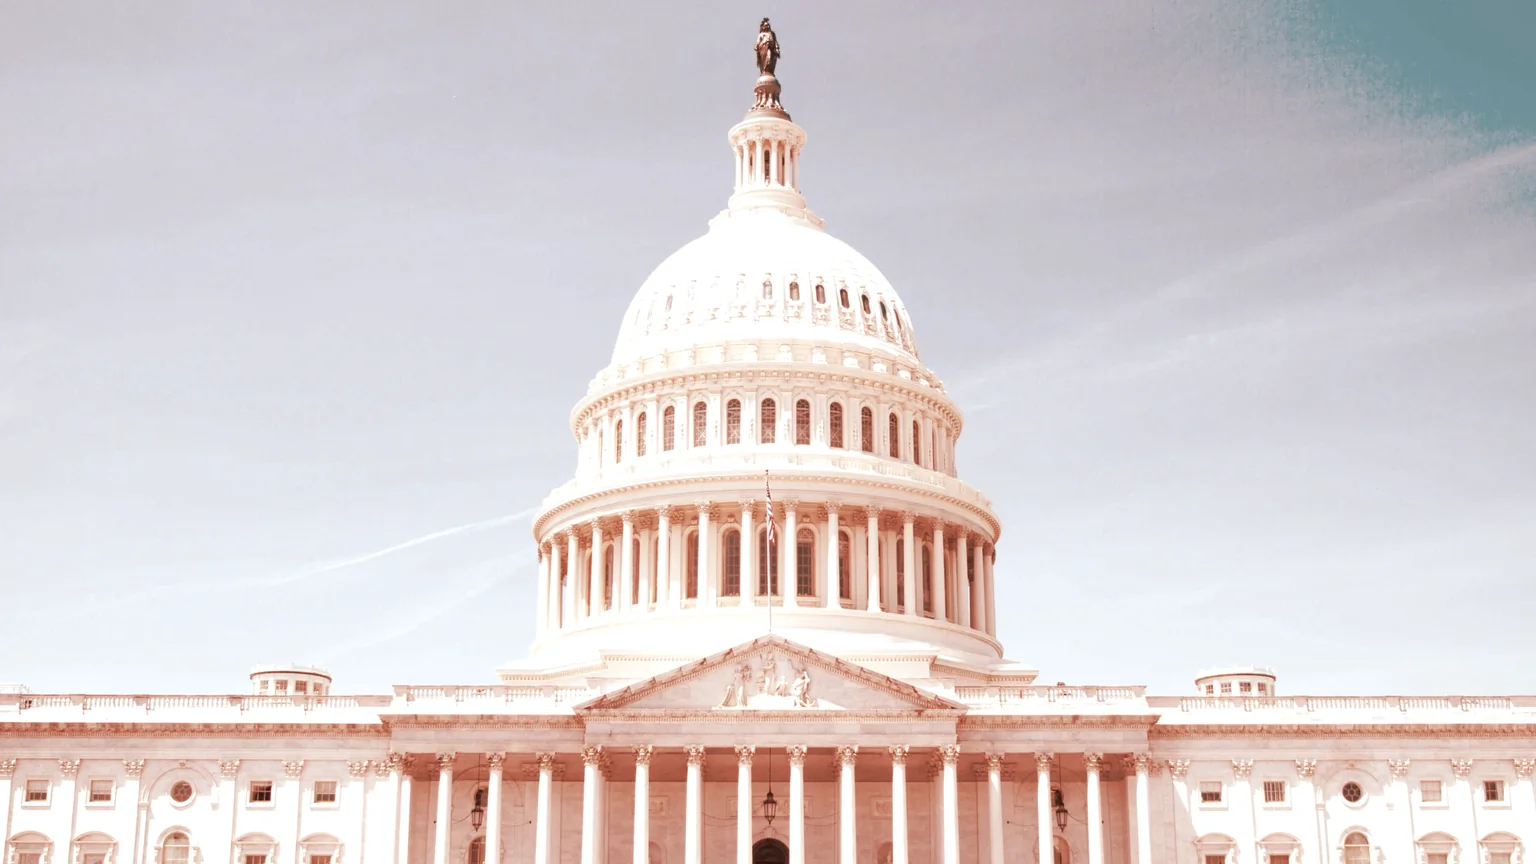 The US Senate. Image: Unsplash